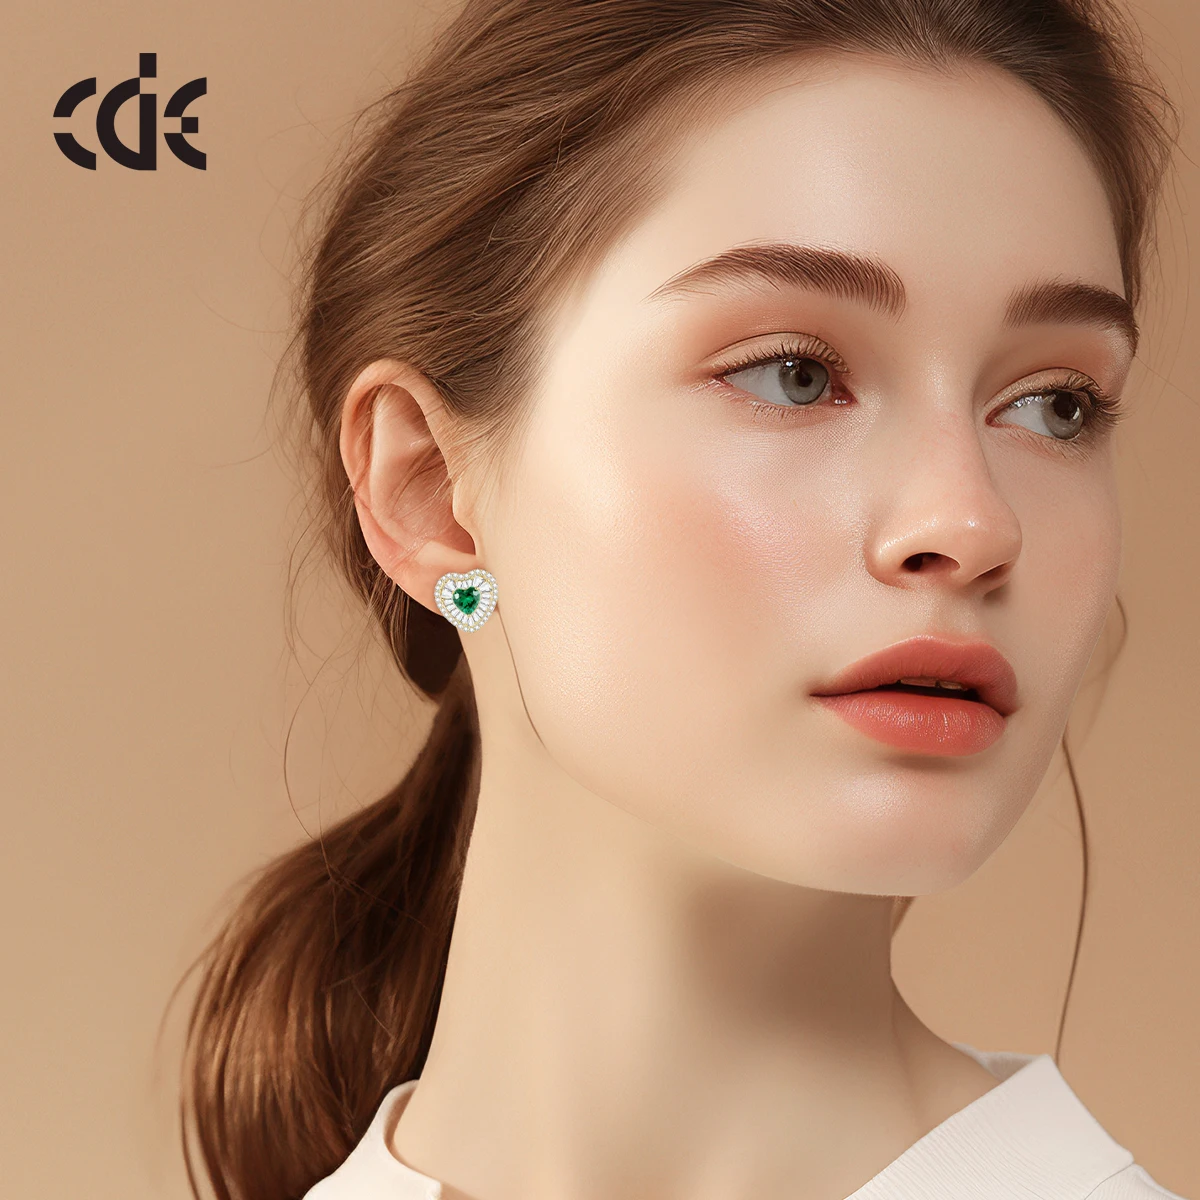 CDE CZYE005 Fine Jewelry Earring 925 Sterling Silver Zircon Women 14K Gold Plated Earrings Wholesale Bulk Heart Stud earrings